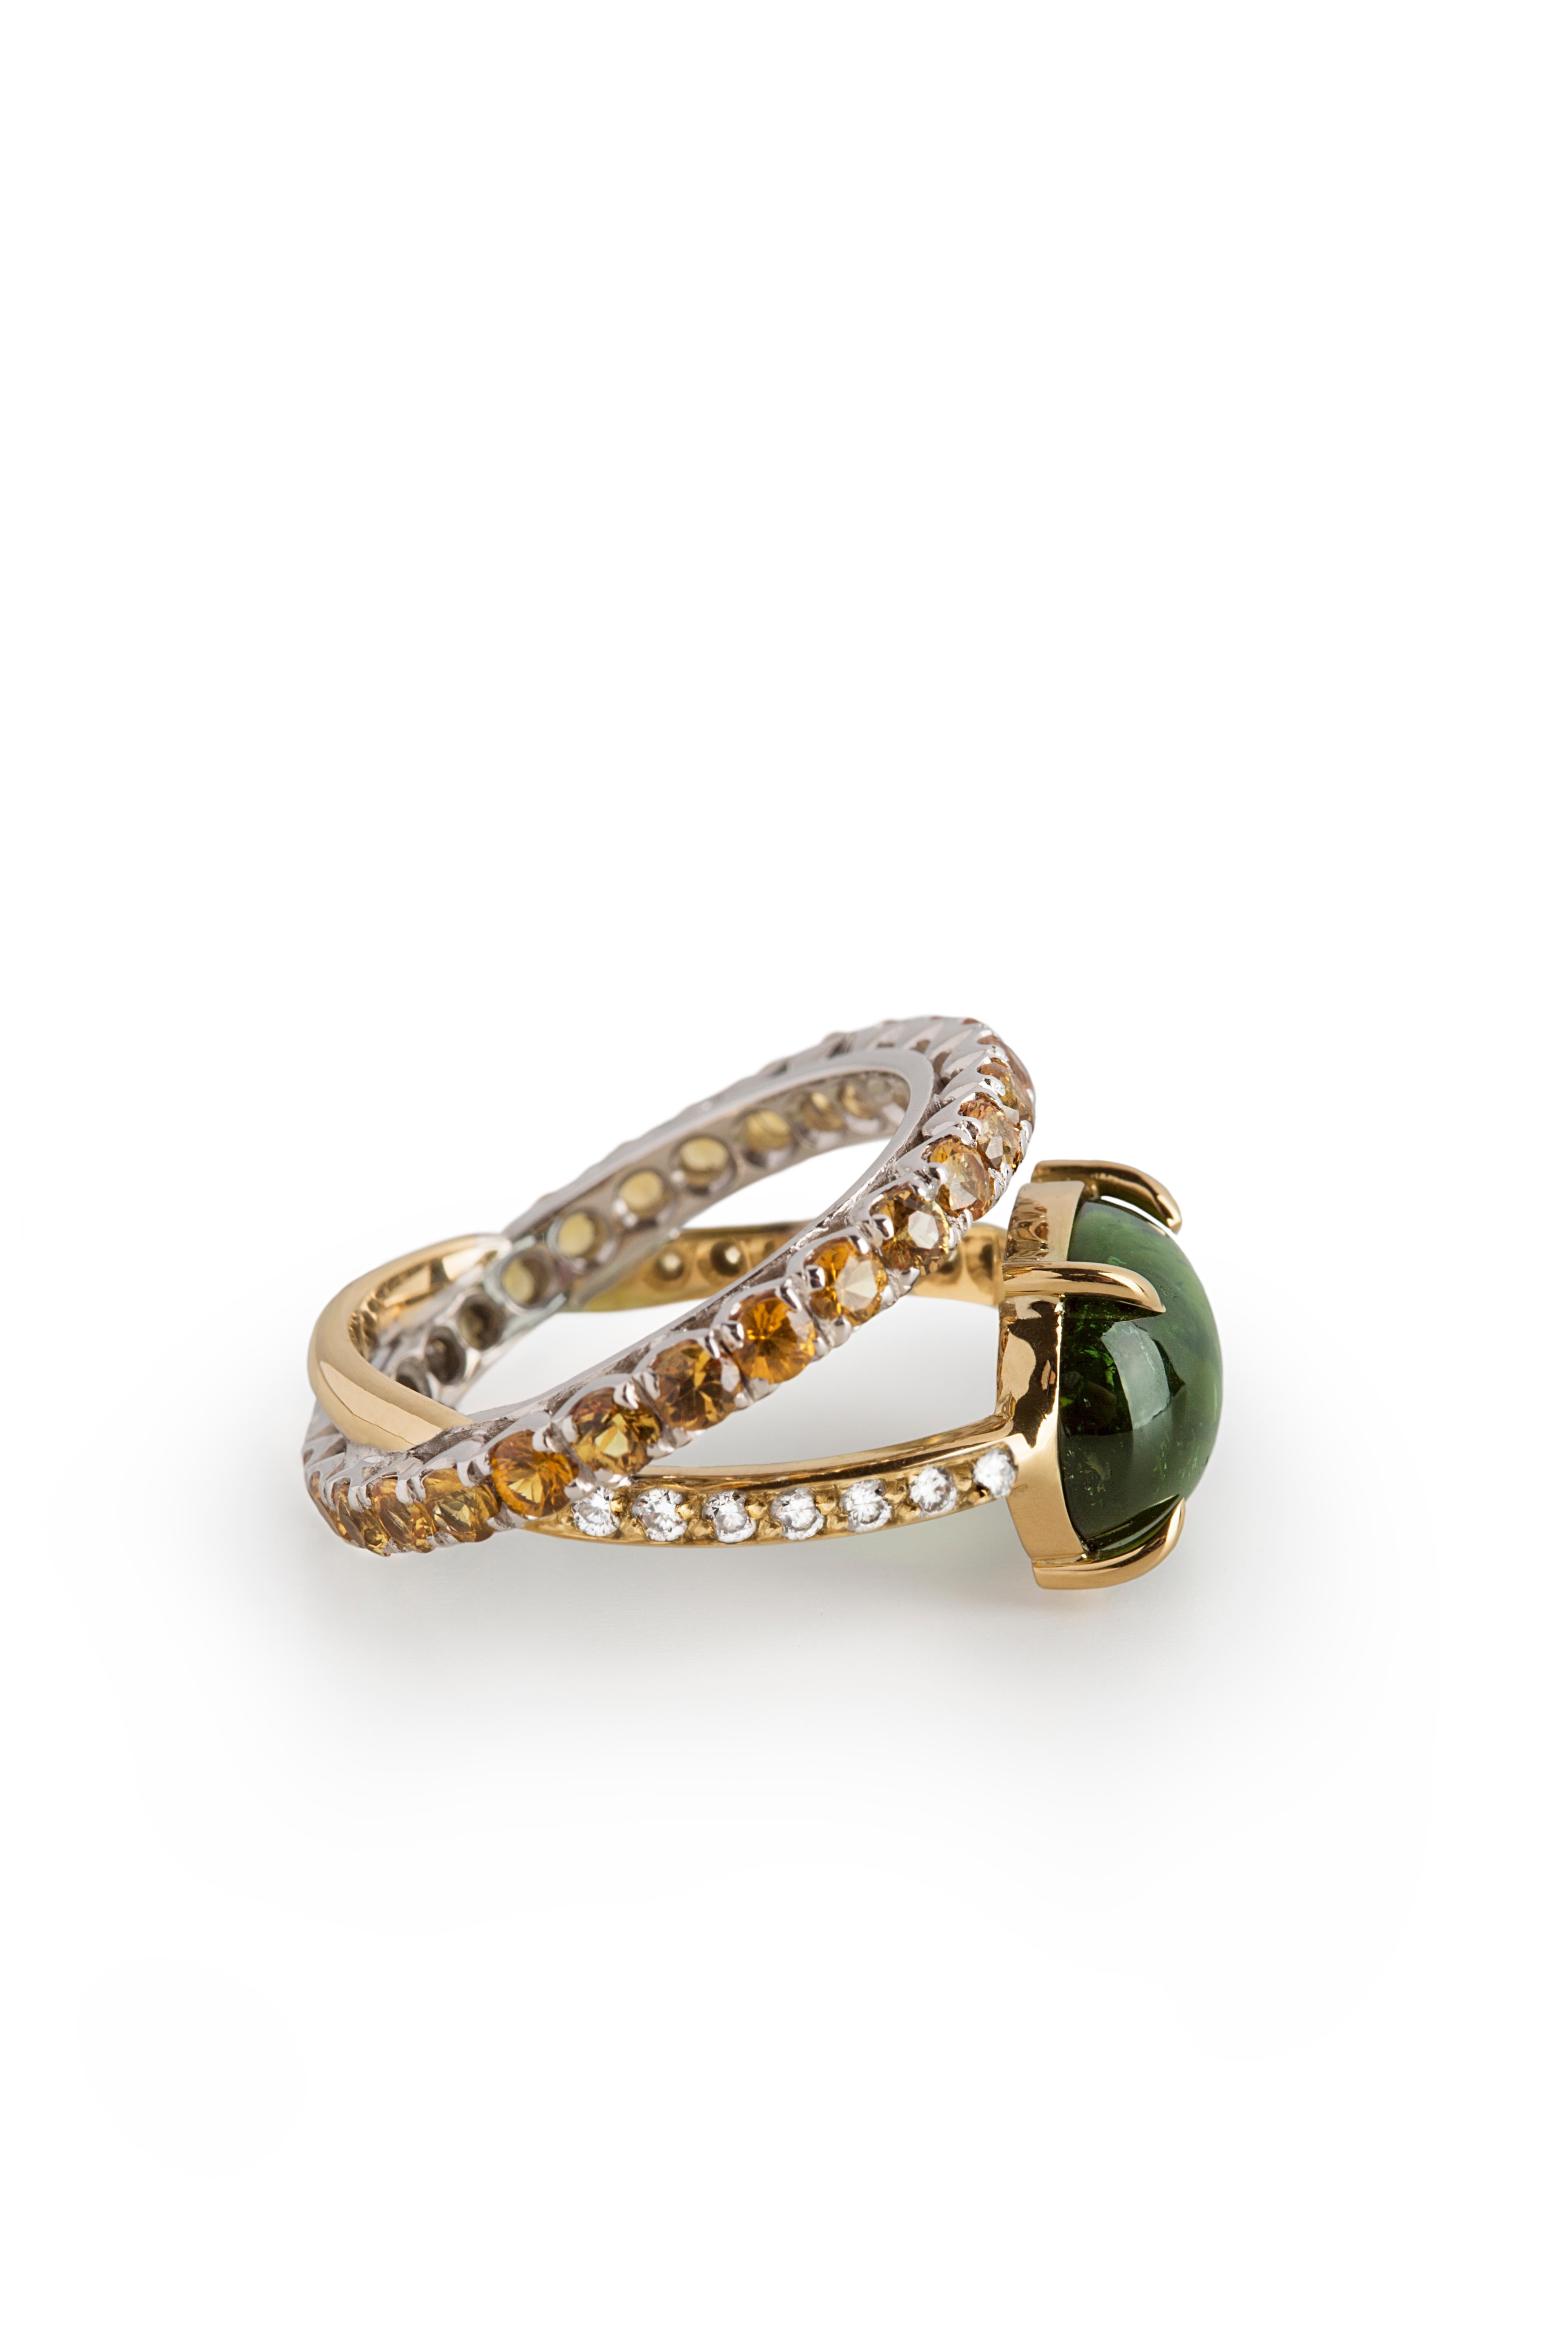 Rossella Ugolini Design Kollektion, Moderner 18 K Gold Grüner Turmalin 0,10 Karat Weiße Diamanten Orange Mandarine Saphire Ring.
Diese tiefgrüne Aura Ring ist völlig handgefertigt in 18 Karat Gelb- und Weißgold, geschmückt mit einem 4,26 Karat